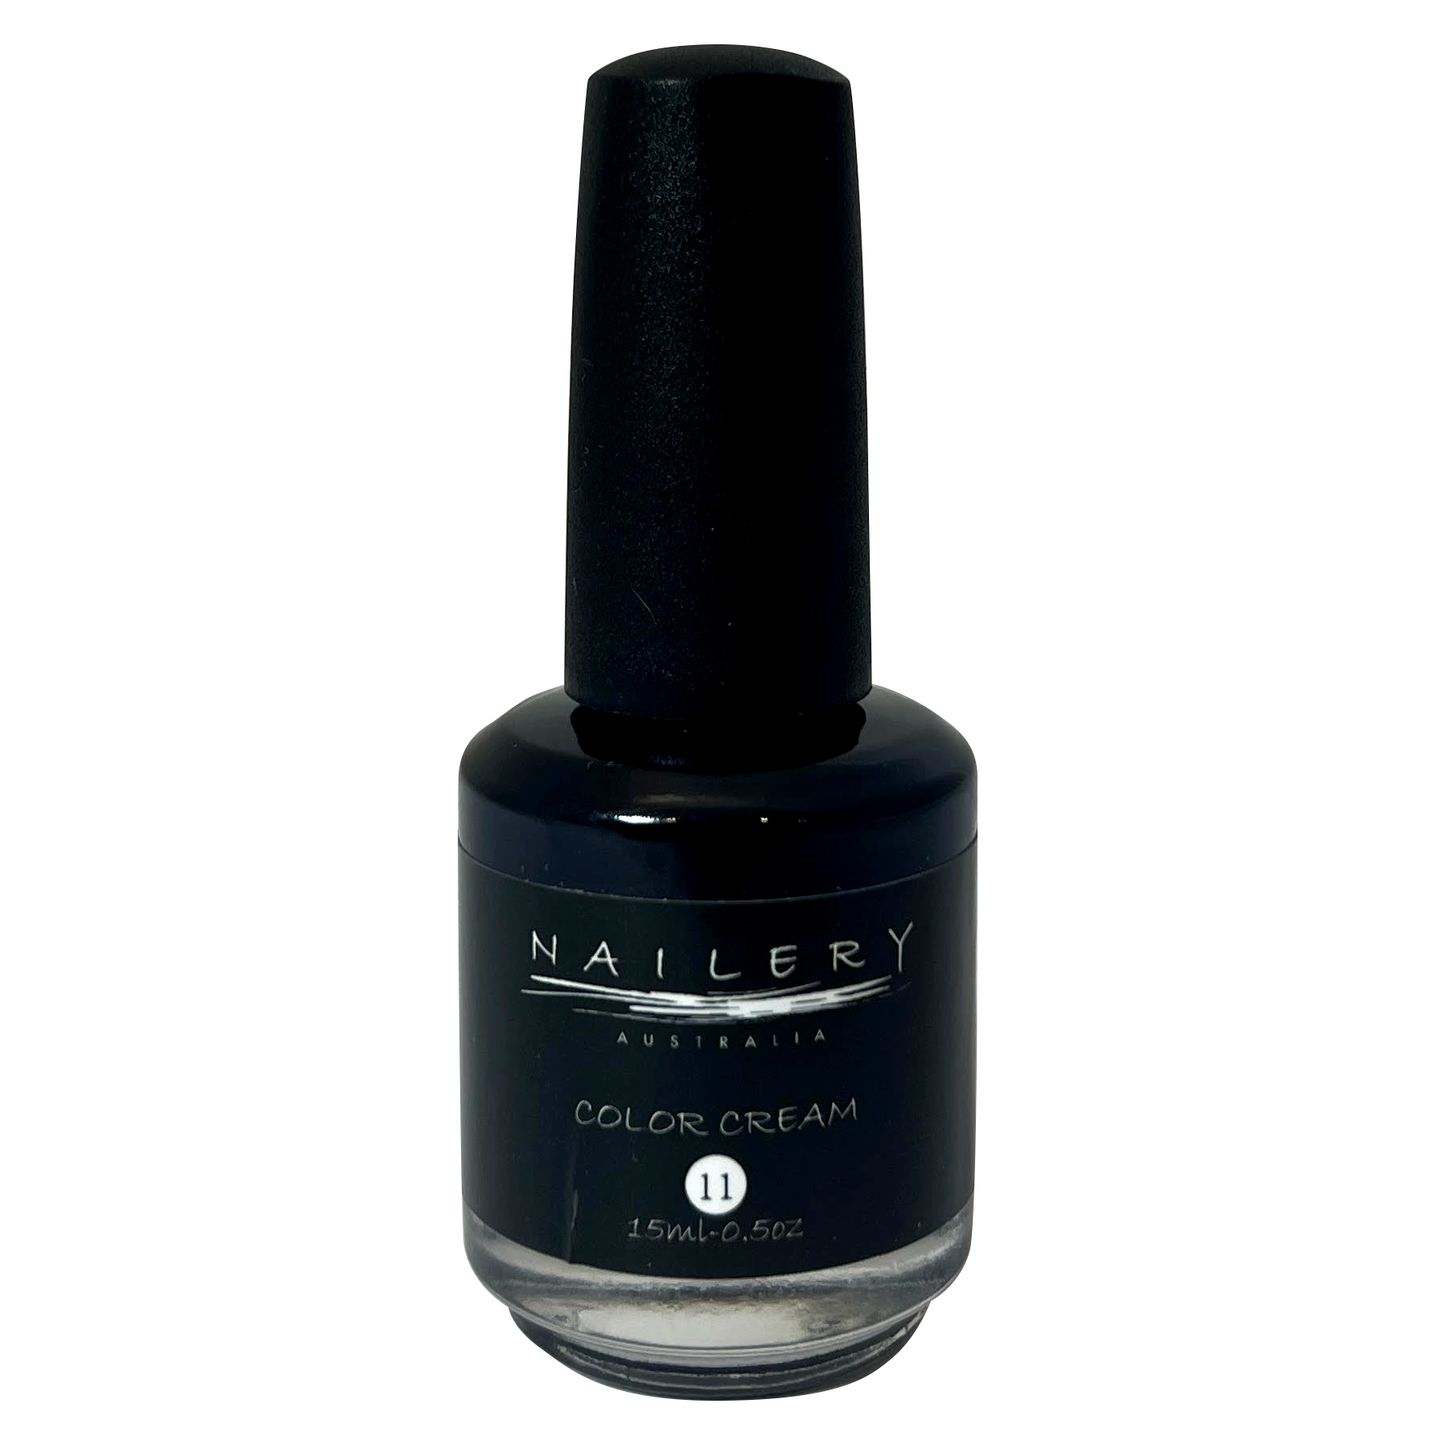 Nailery Nail Polish #11 - 15ml